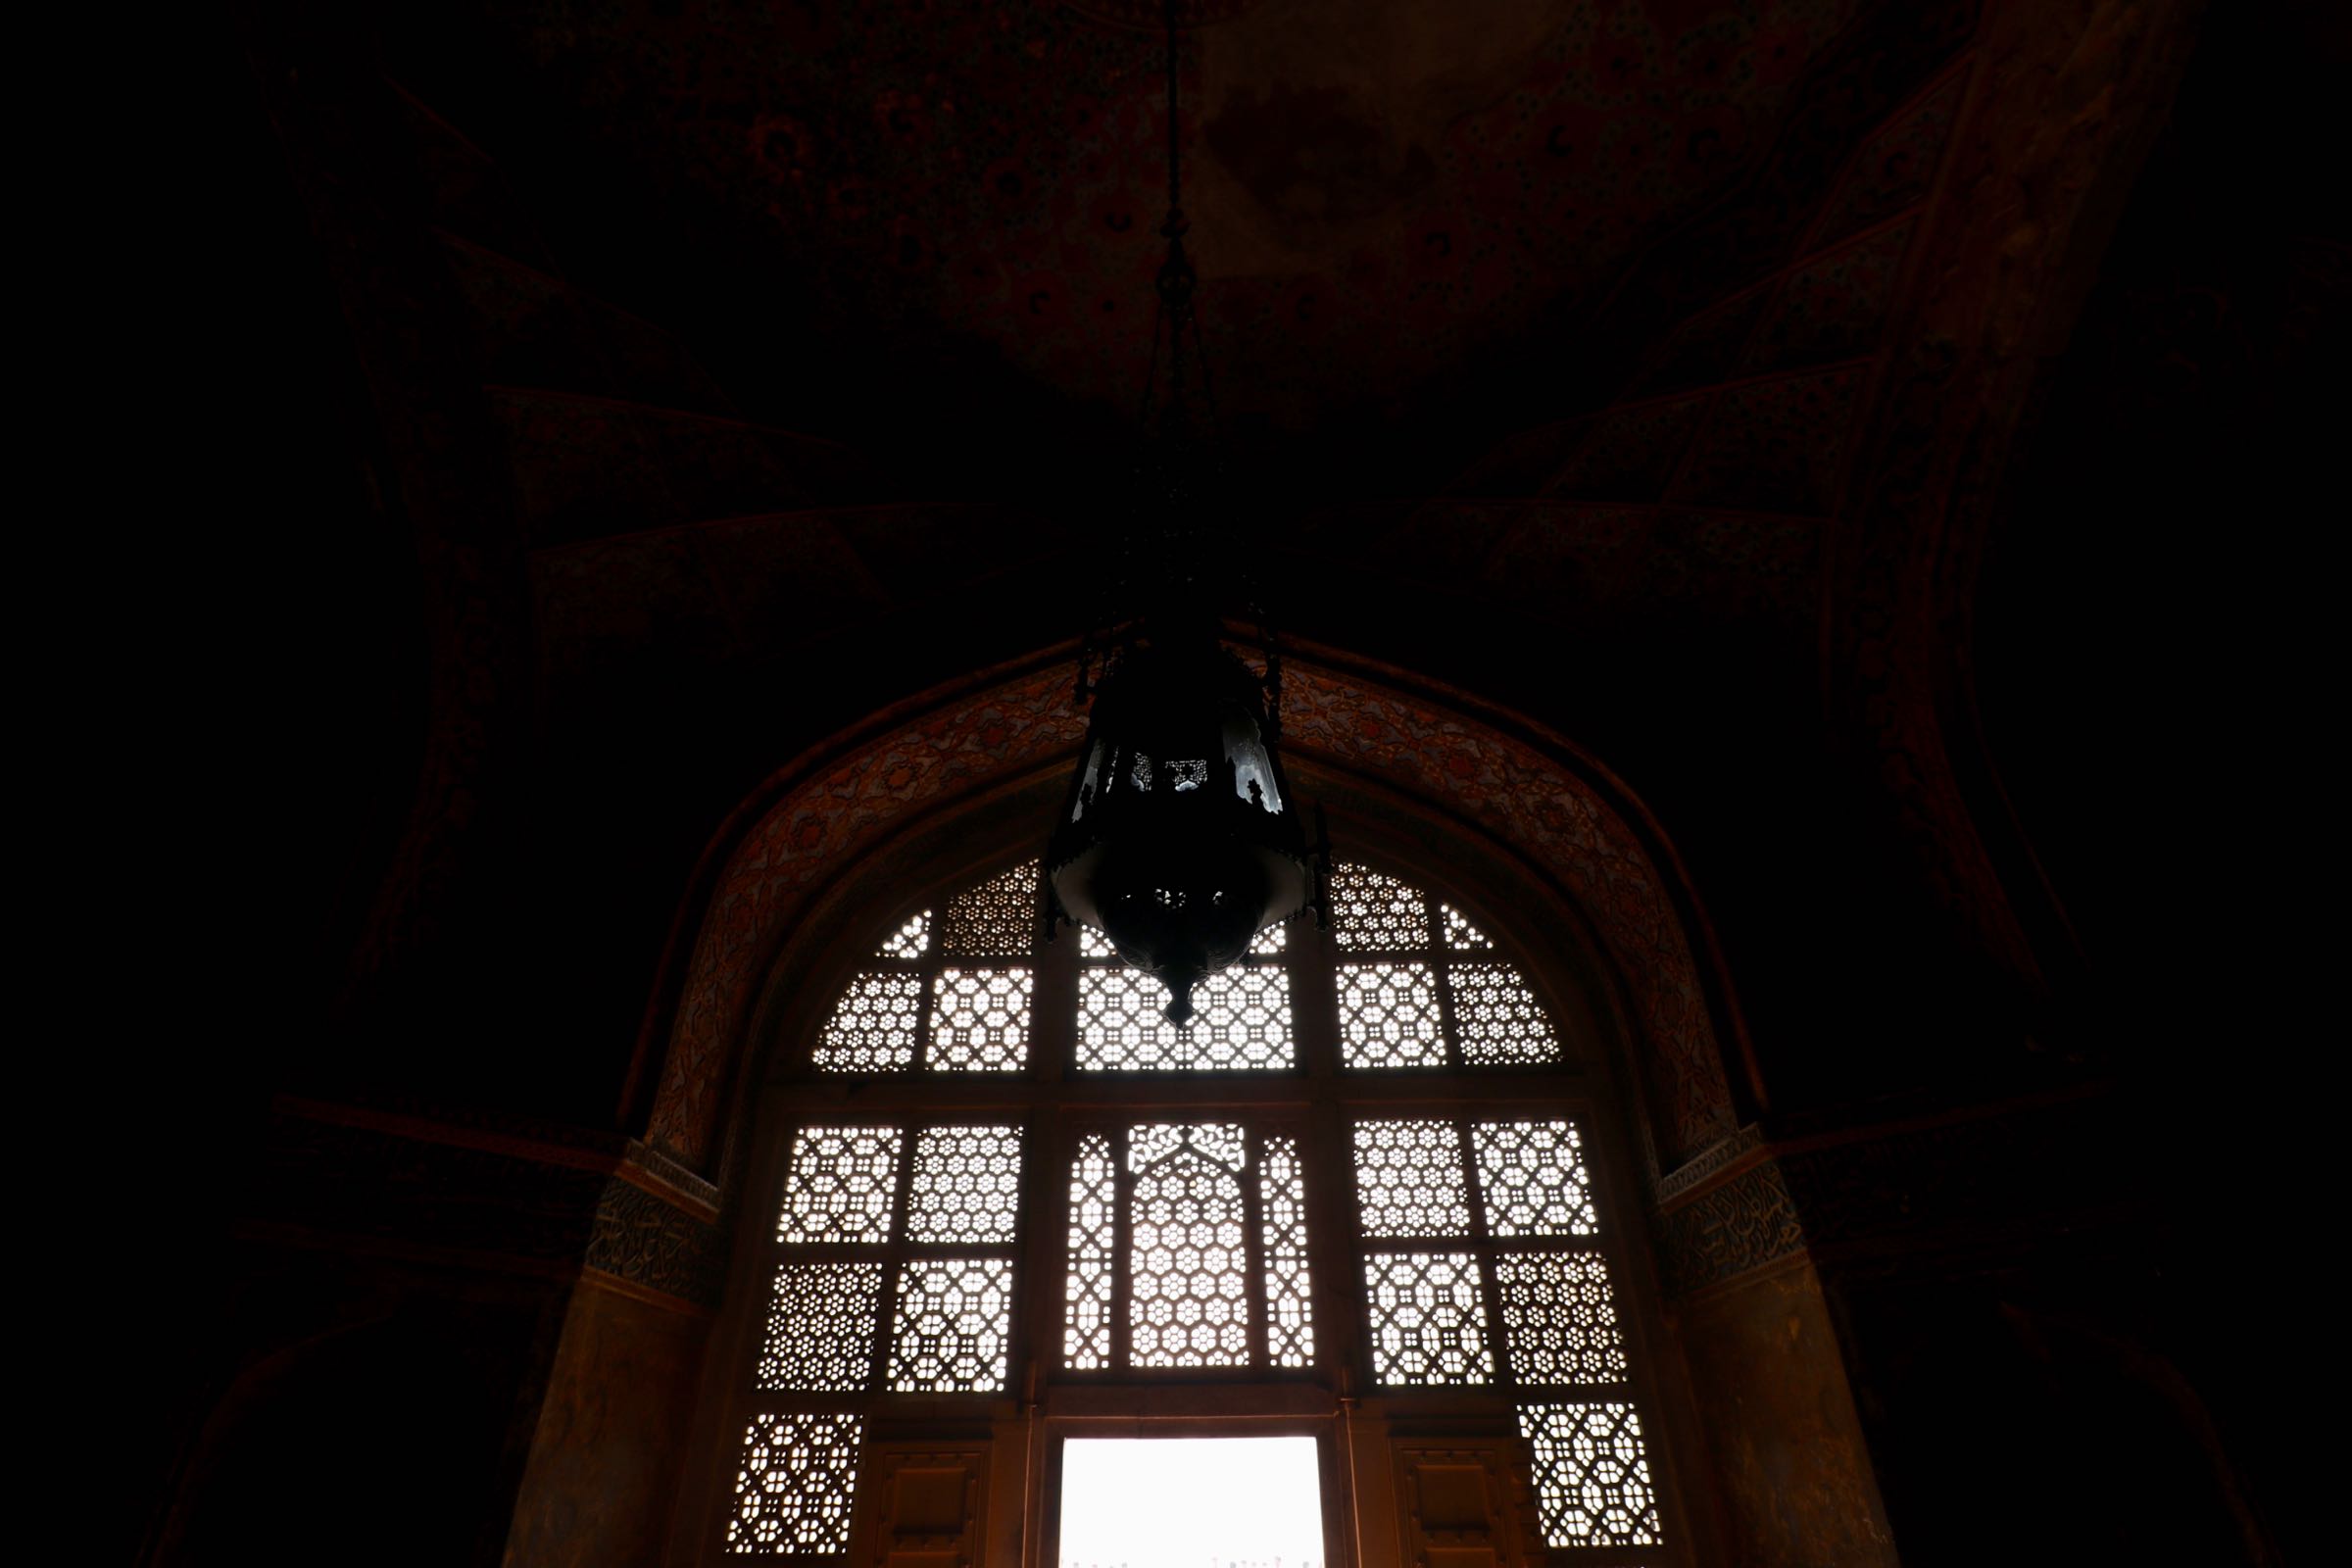 Innenraum des Akbar-Mausoleum, Agra, Indien